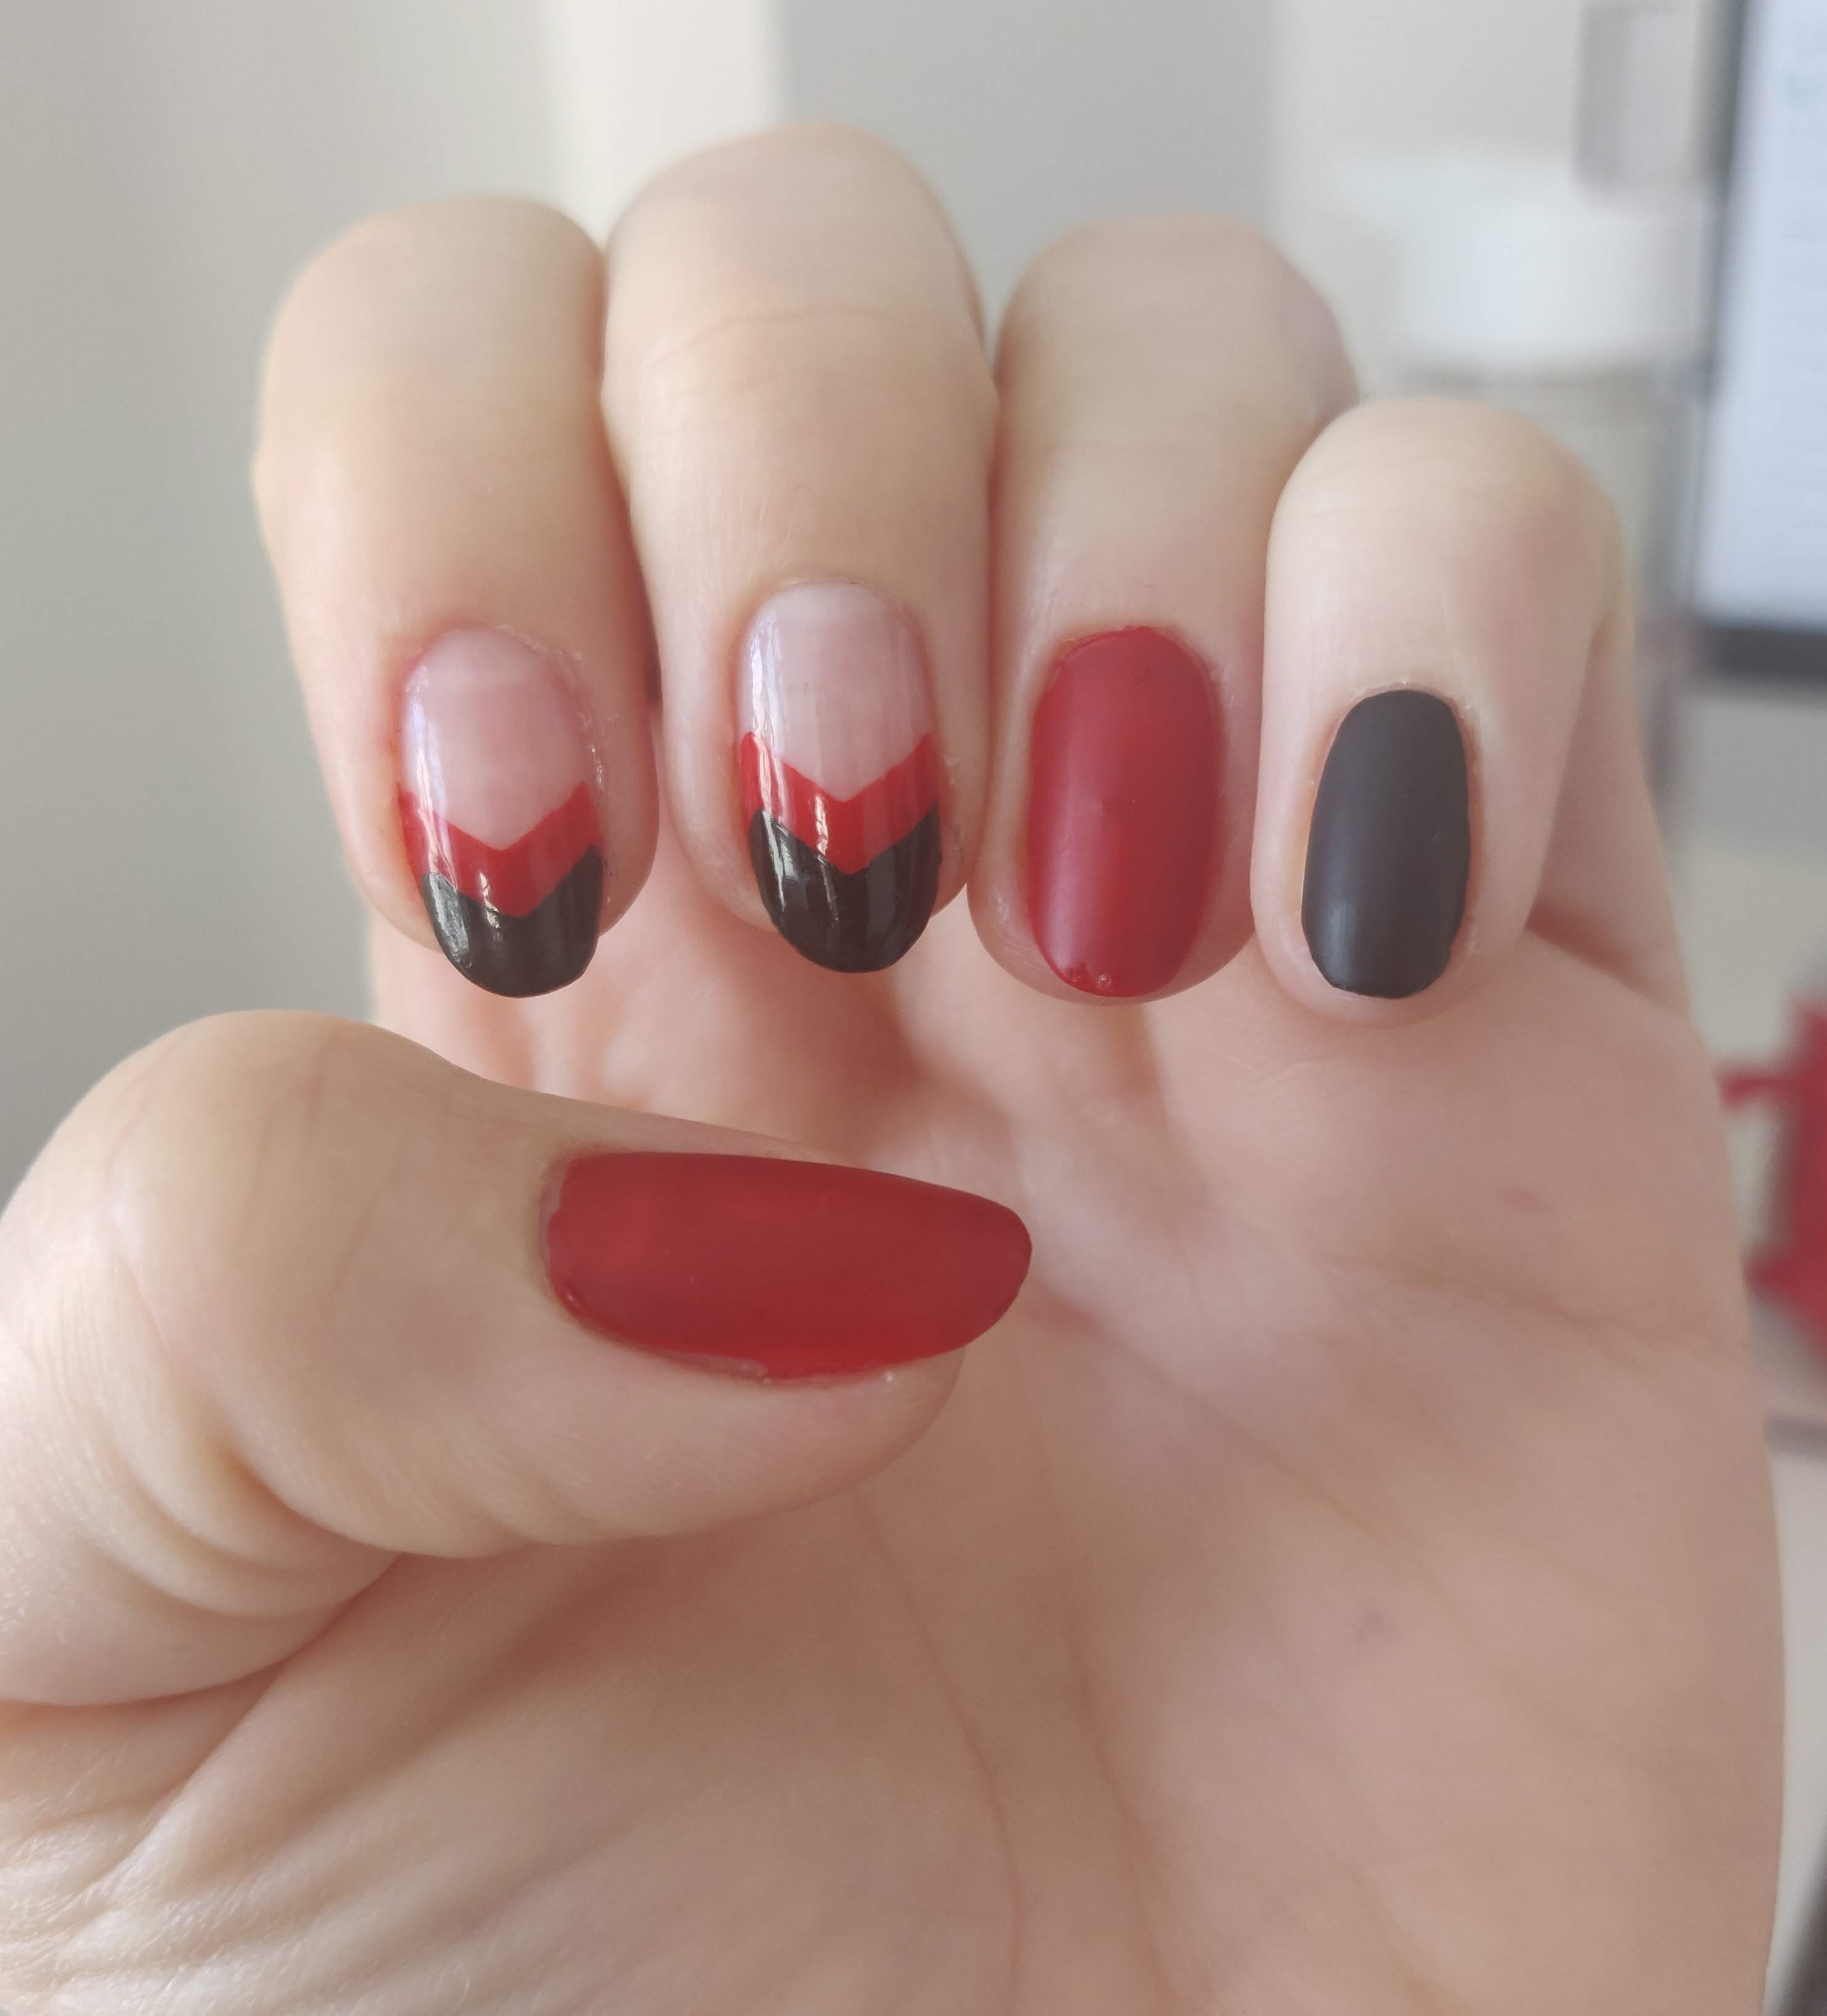 Tip guides nail art